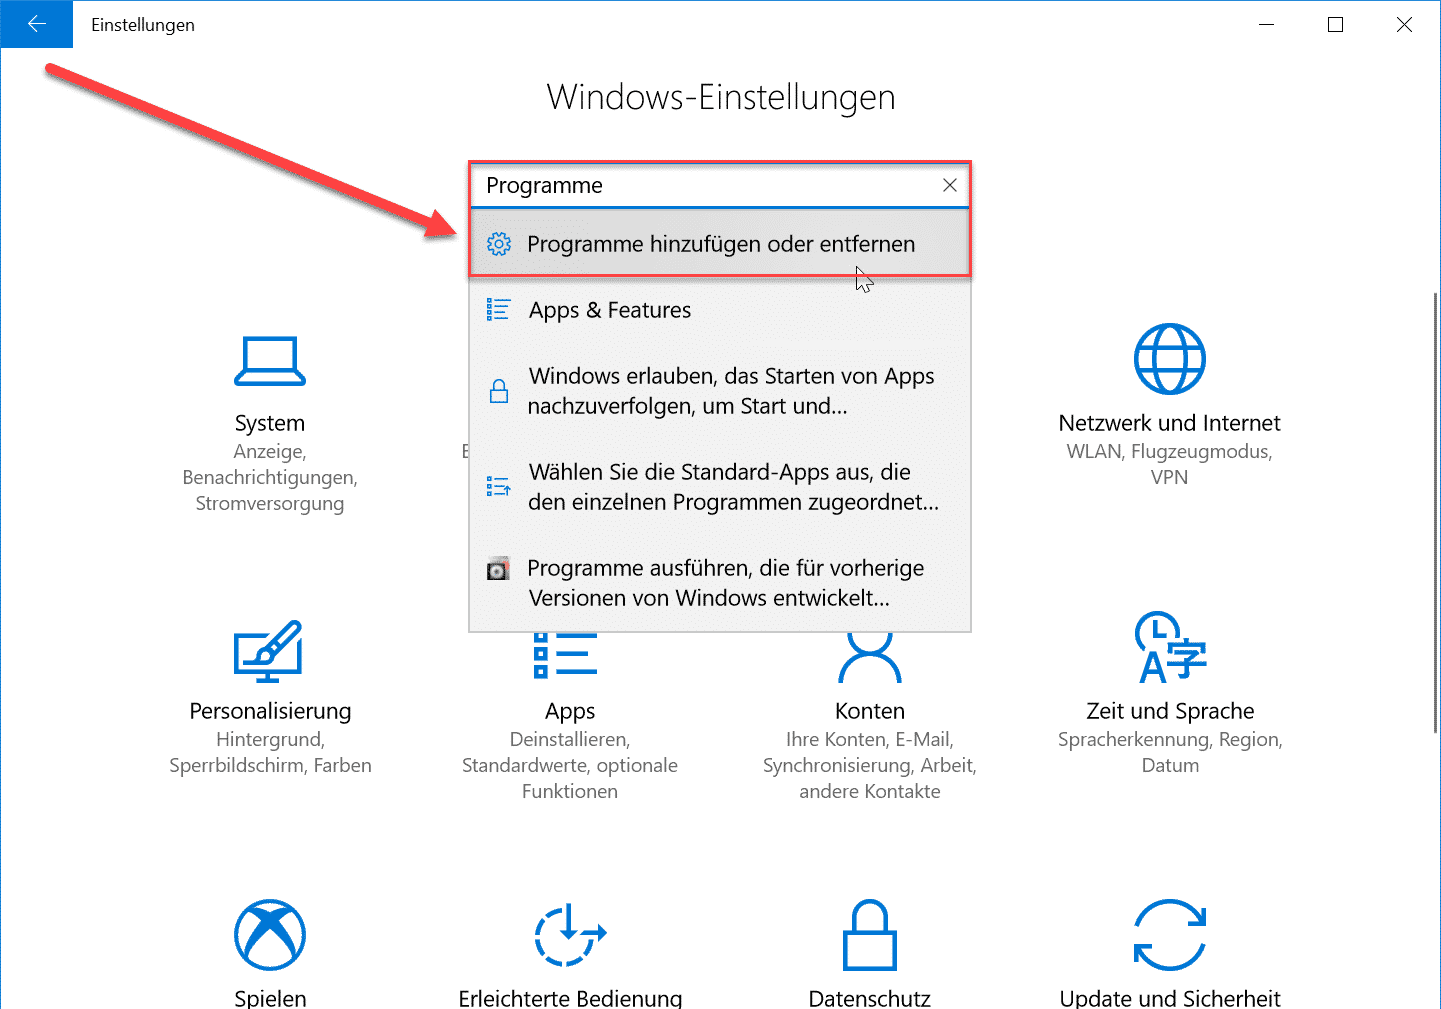 Windows 10 Programme hinzufügen oder entfernen